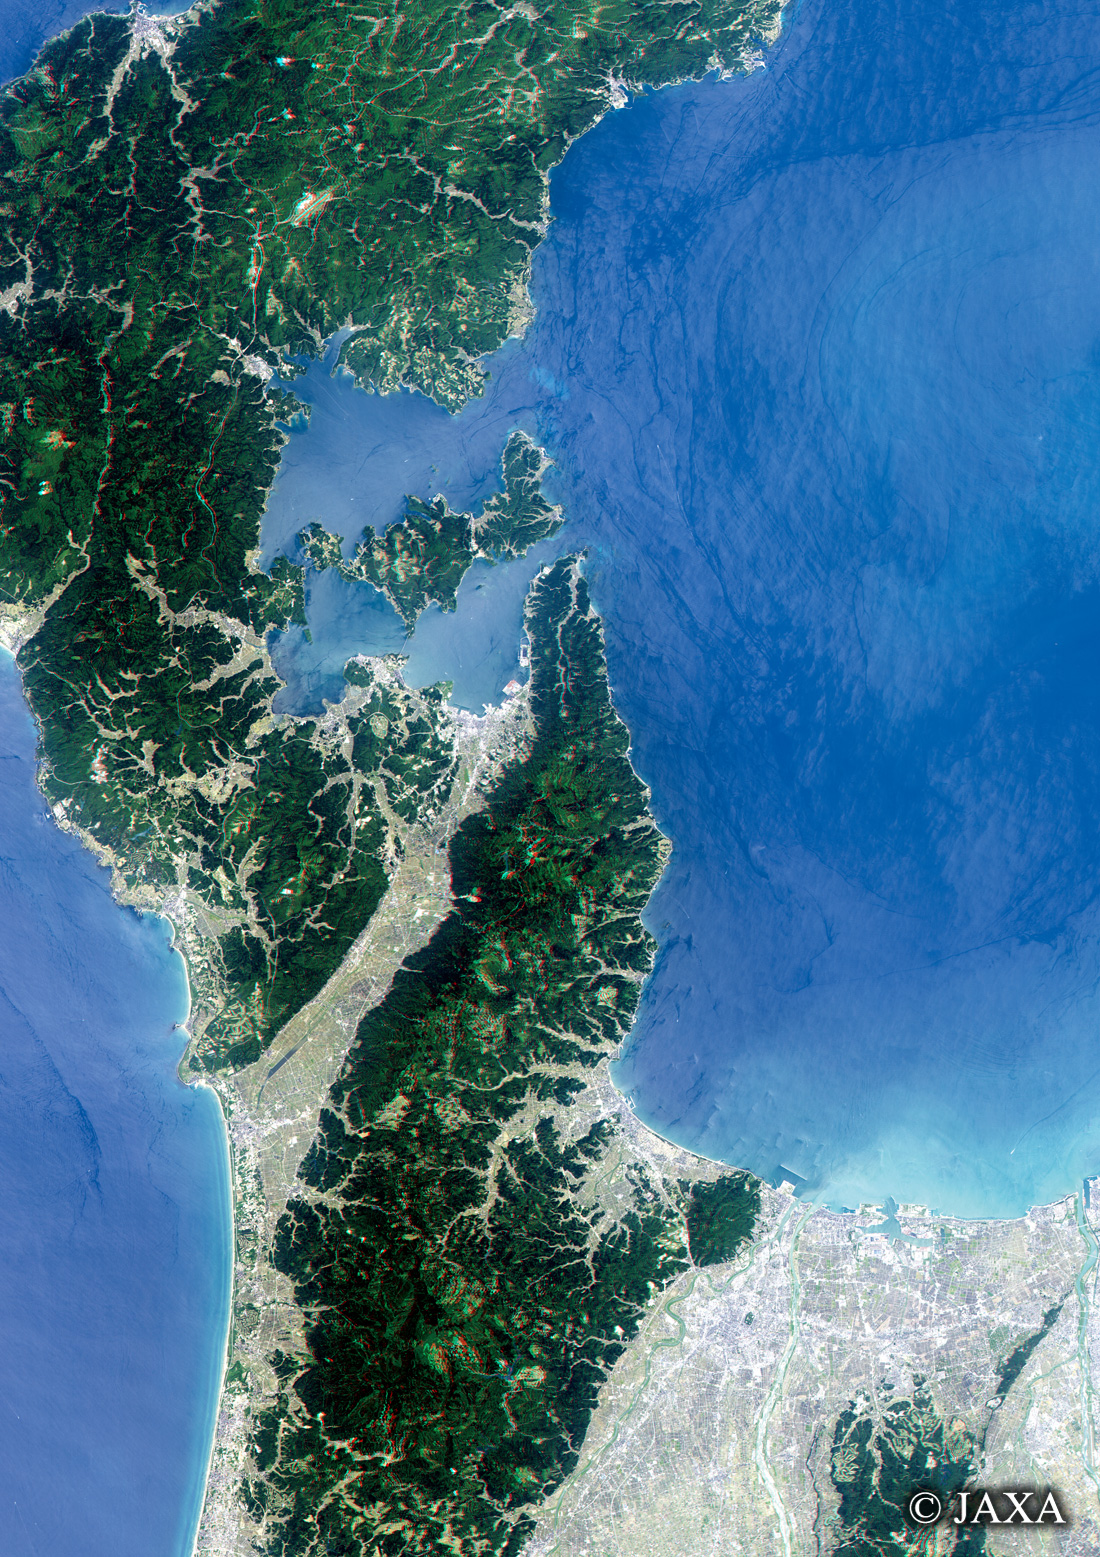 だいちから見た日本の都市 能登半島立体視画像:衛星画像